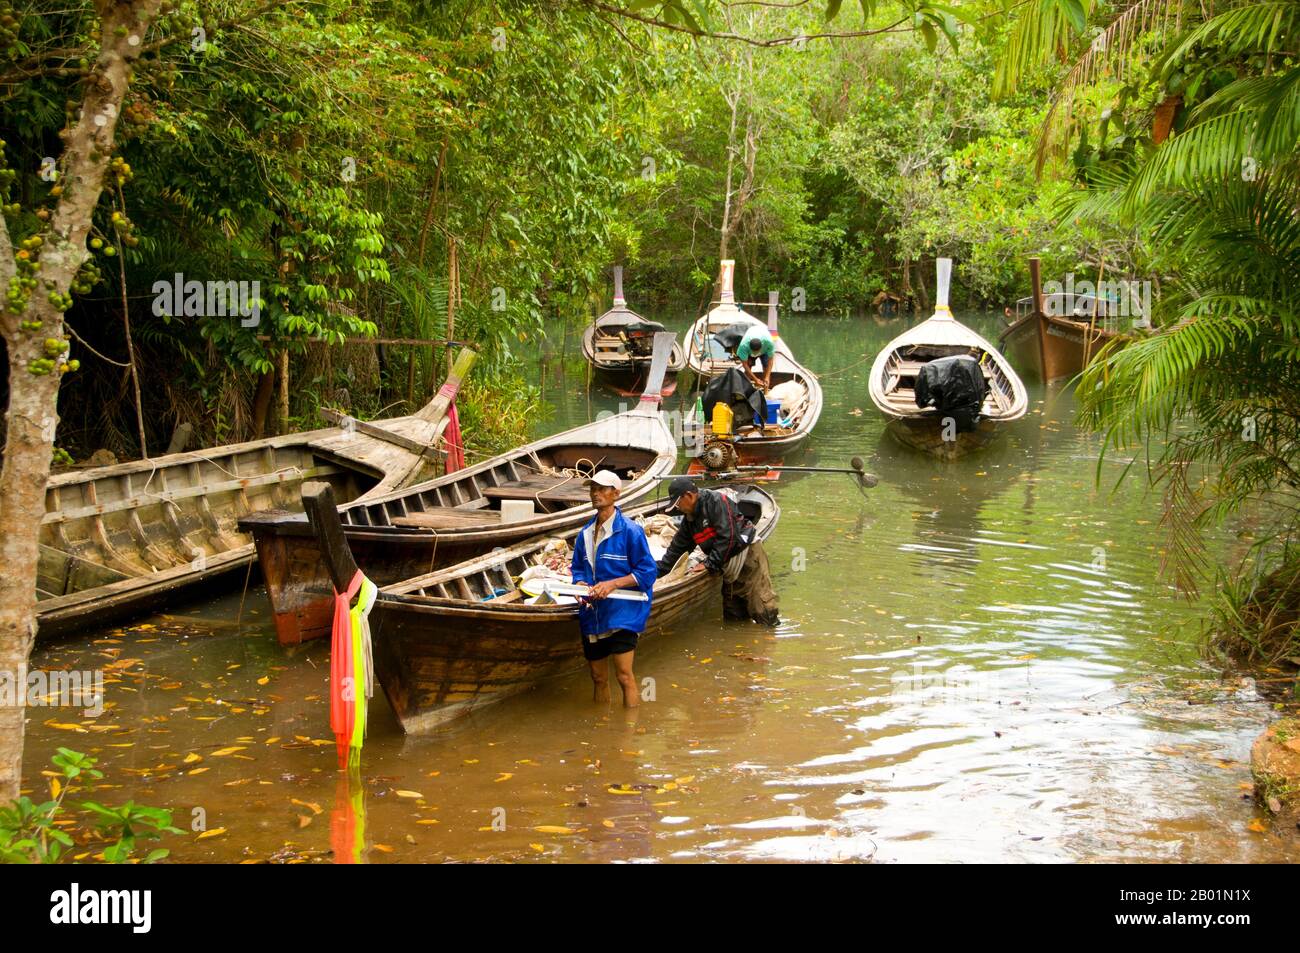 Thailandia: Barche sul fiume presso la palude e la foresta di Tha Pom, sulla costa di Krabi. Tha Pom (il nome completo in thailandese è Pa Phru Tha Pom Khlong Song Nam) è una palude di torba e una foresta che corre principalmente da una piscina chiamata Chong Phra Kaew lungo un corso d'acqua naturale. La gente locale chiama questo canale Khlong Song Nam o "due tipi di canale d'acqua", perché l'acqua dolce limpida si incontra e si fonde con l'acqua di mare con l'alta marea, dando luogo a un ambiente naturale in cui le palme di Lumphi (Eleiodoxa conferta) si incontrano e si mescolano con la foresta di mangrovie. Foto Stock